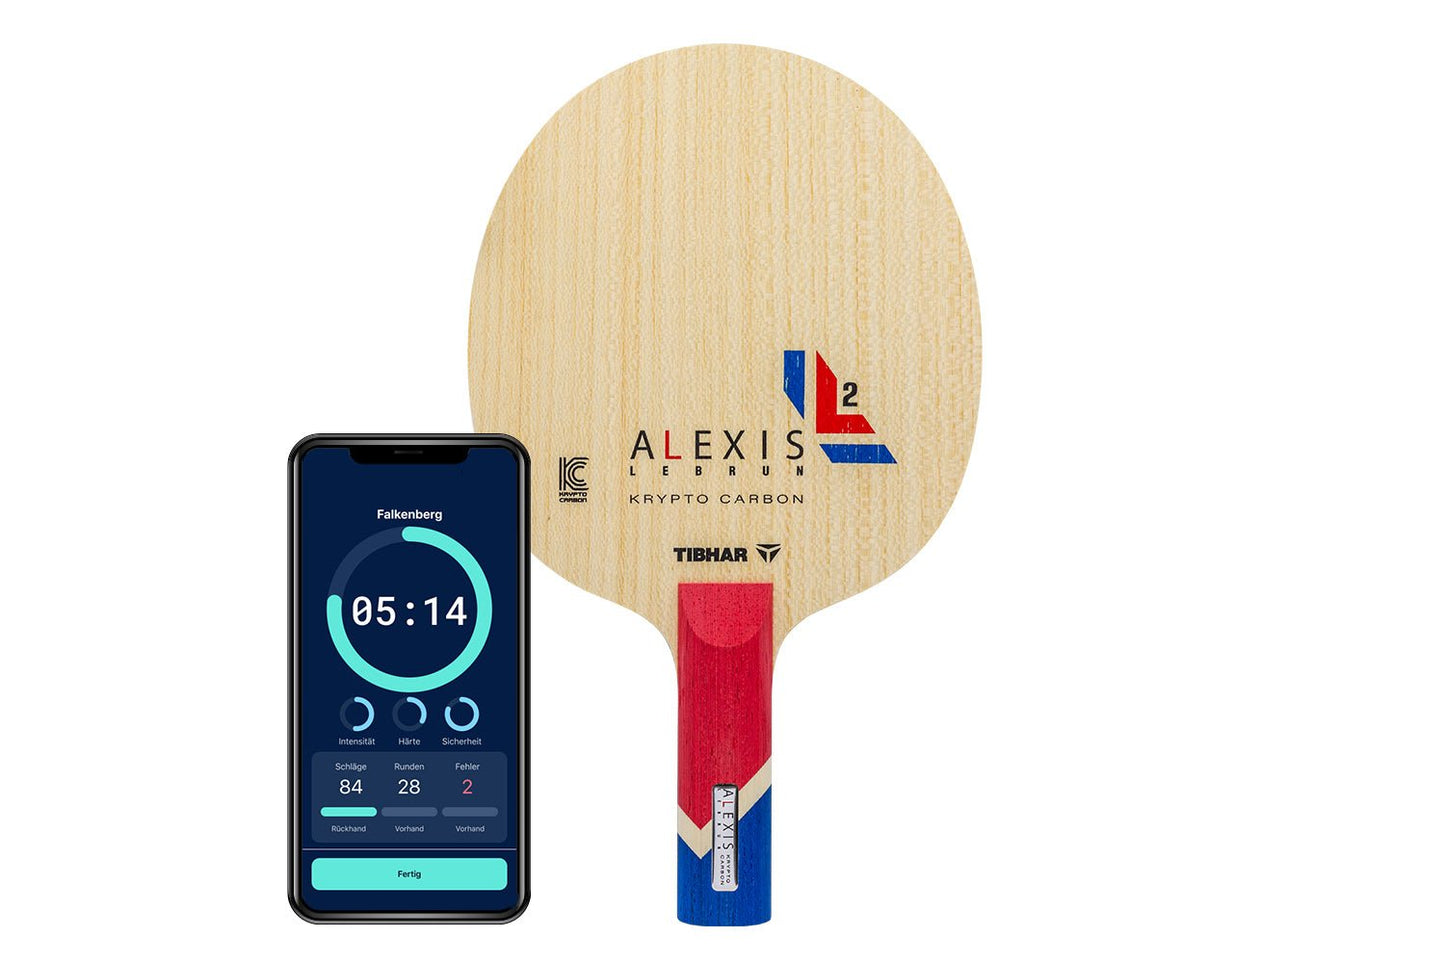 Tibhar Alexis Lebrun Krypto Carbon Tischtennisschläger mit geradem Griff und Smartphone zeigt Daten des Schlägers vor weißem Hintergrund